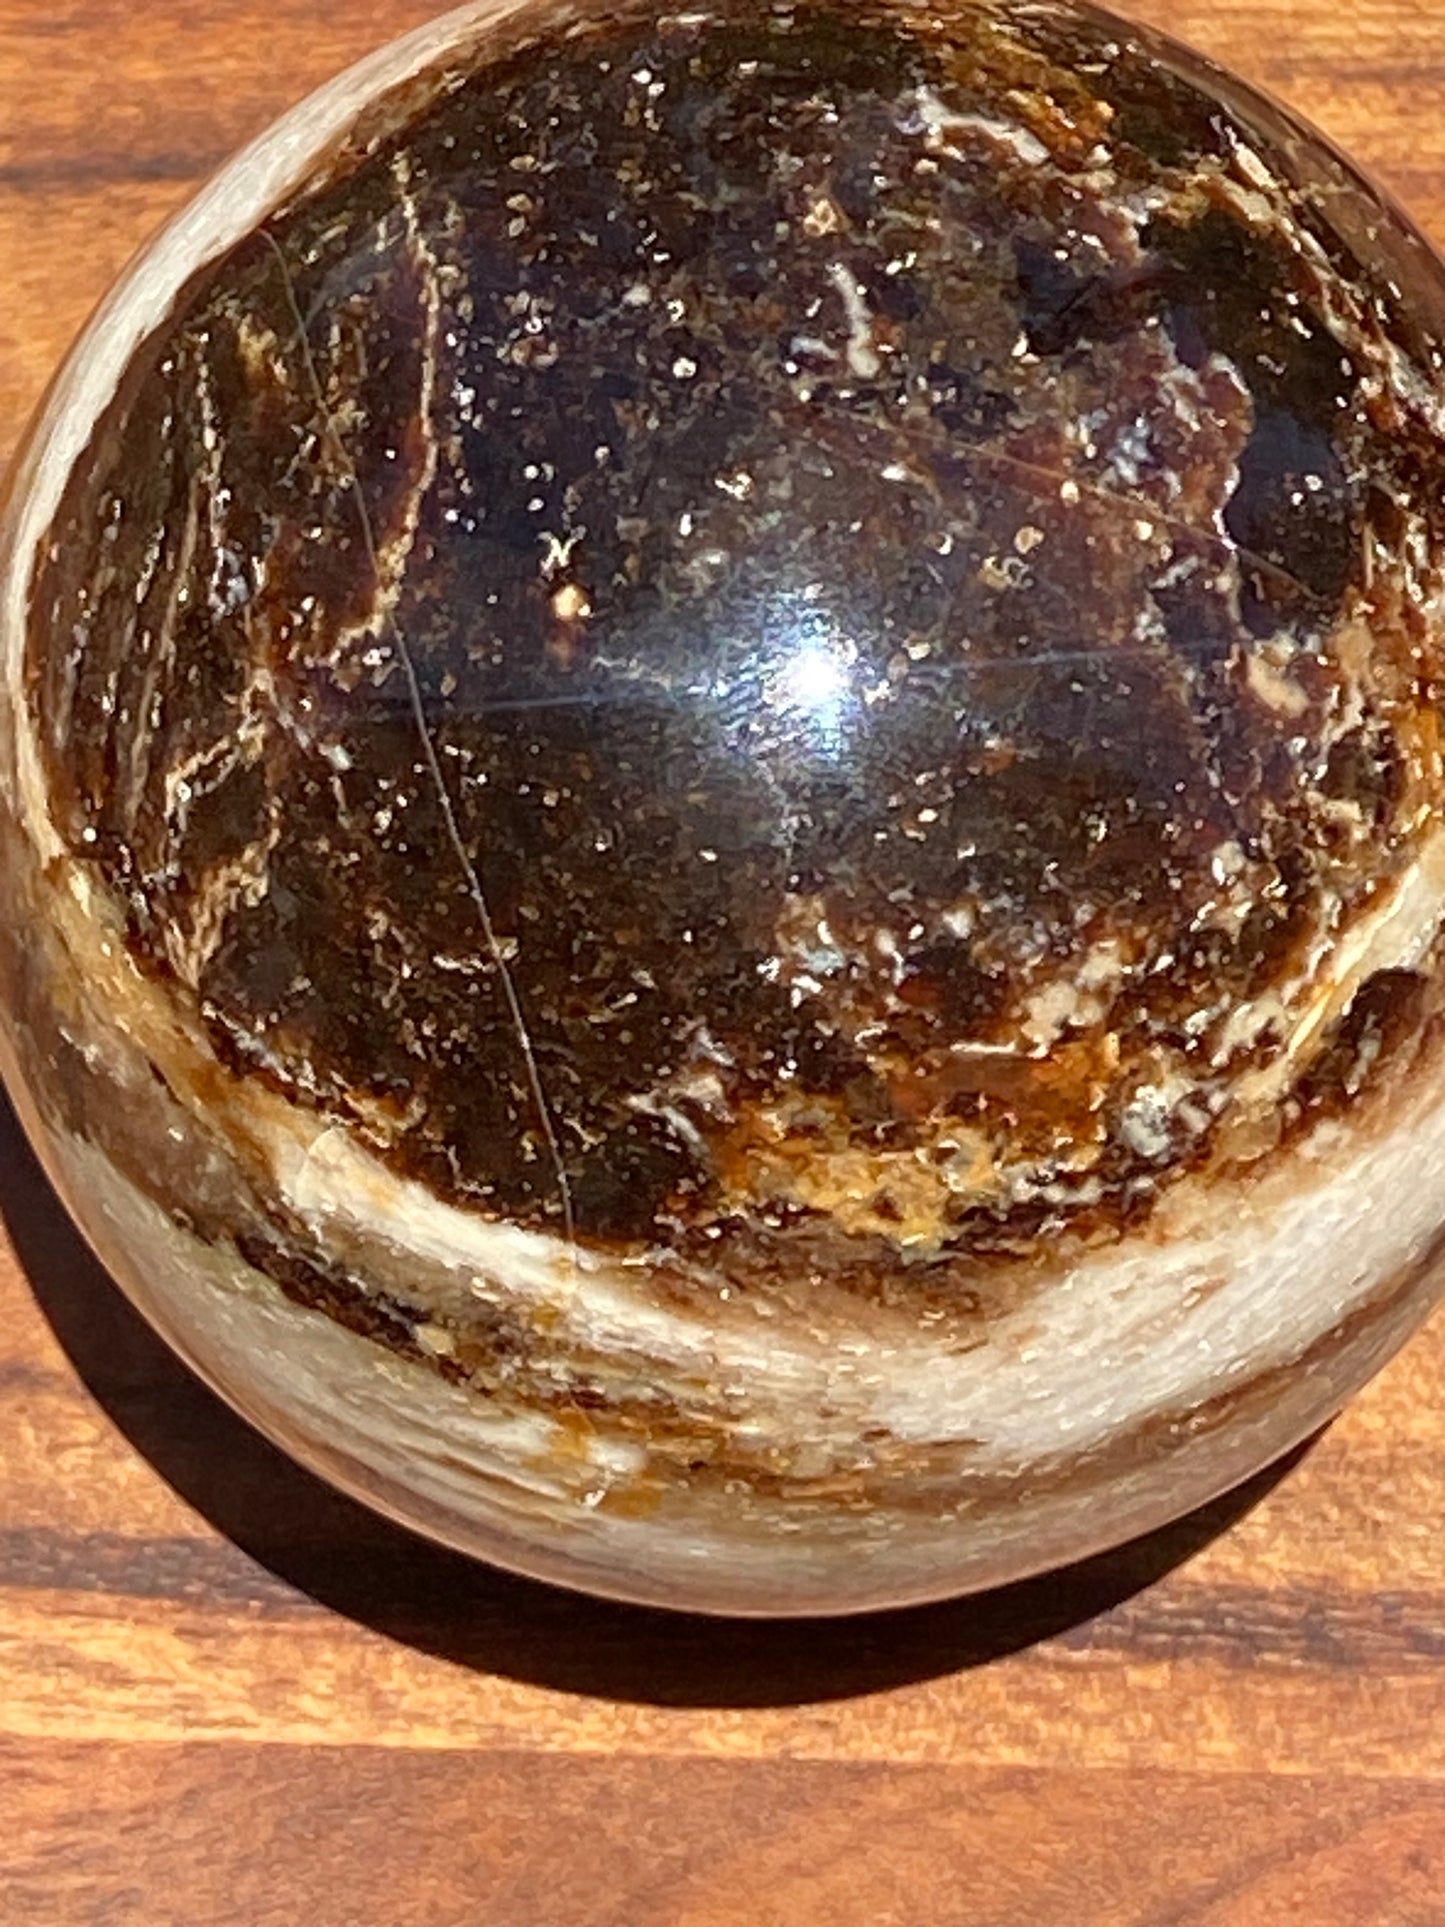 Black Opal Sphere